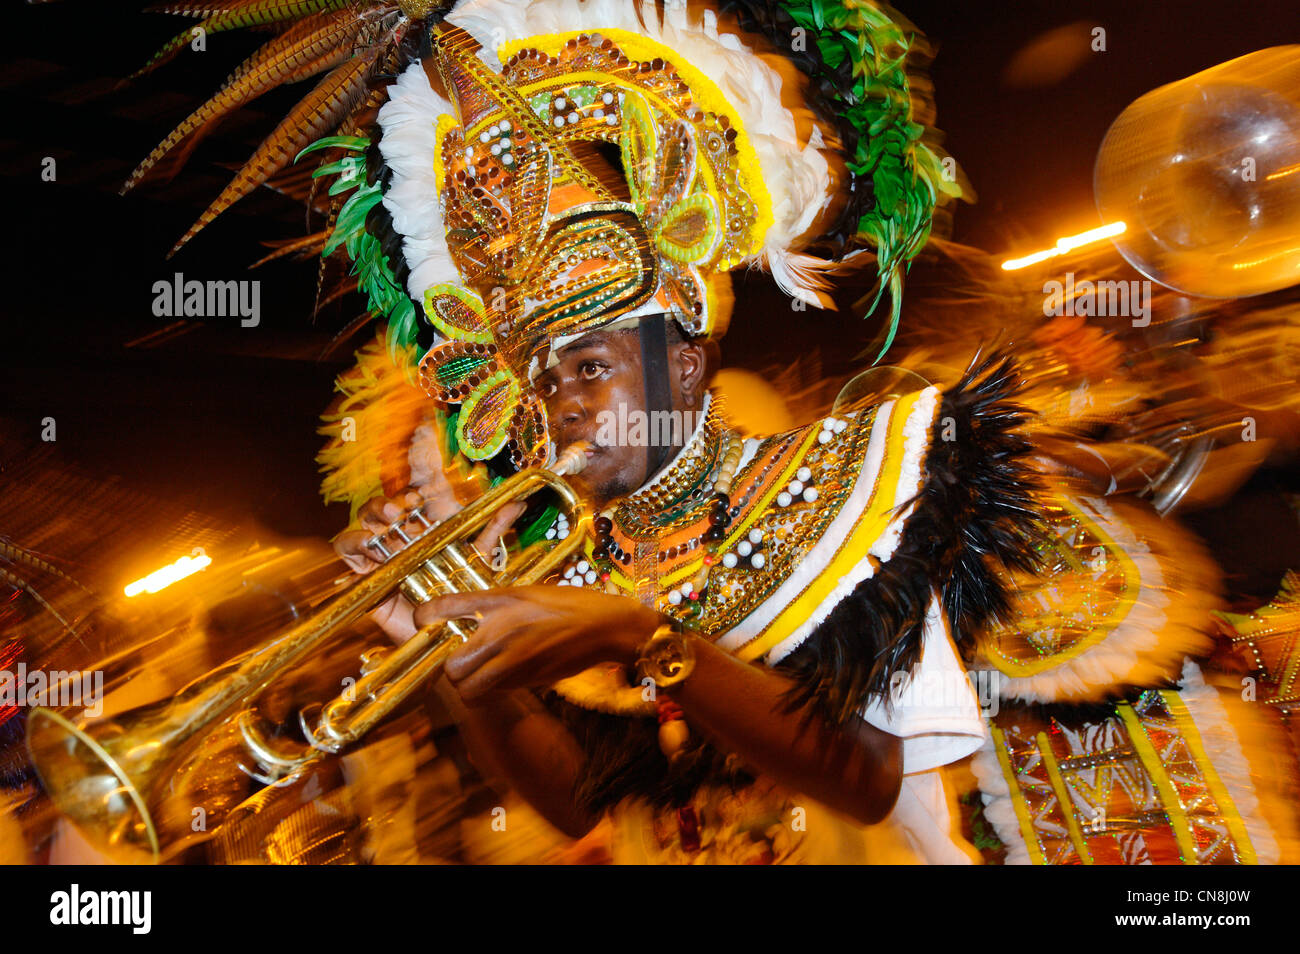 Bahamas, Grand Bahama Island, Freeport, Taino Beach, summer carnival, resumption of famous Junkanoo celebration slaves Stock Photo